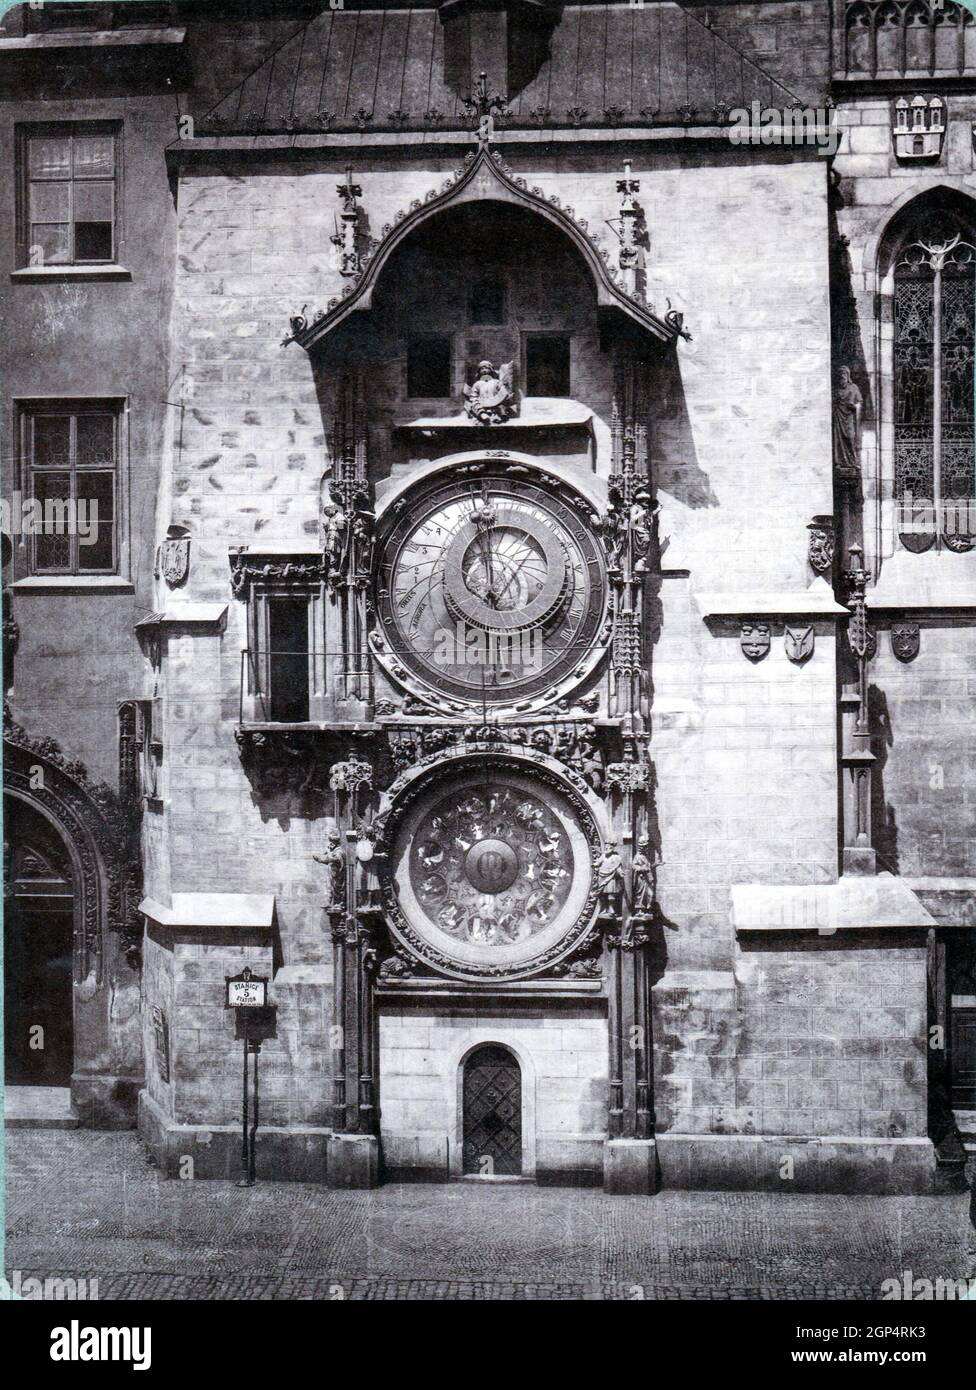 Prager Horloge astronomique, Prag Rathausuhr, Astronomische Uhr. Schwarz-weiß Fotografie um 1900. Stockfoto